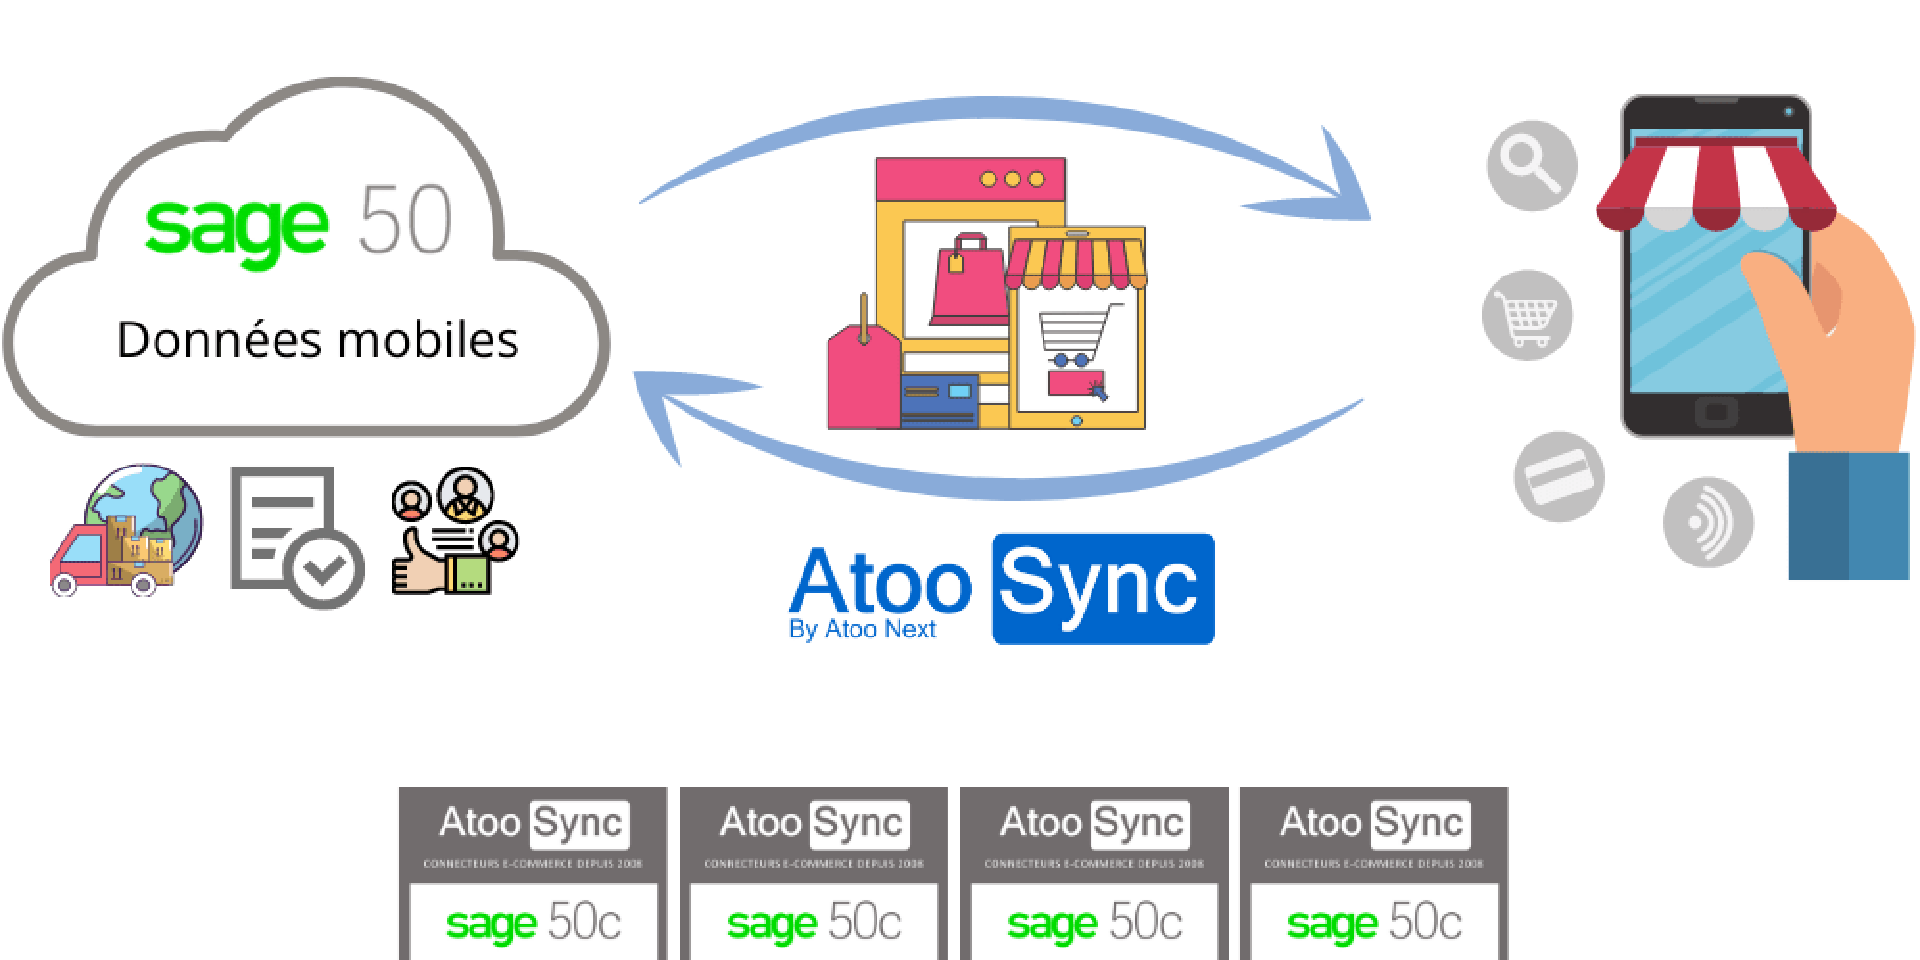 Connecteur-Atoo-Sync-Sage-50-Donnees-Mobiles-et-eCommerce